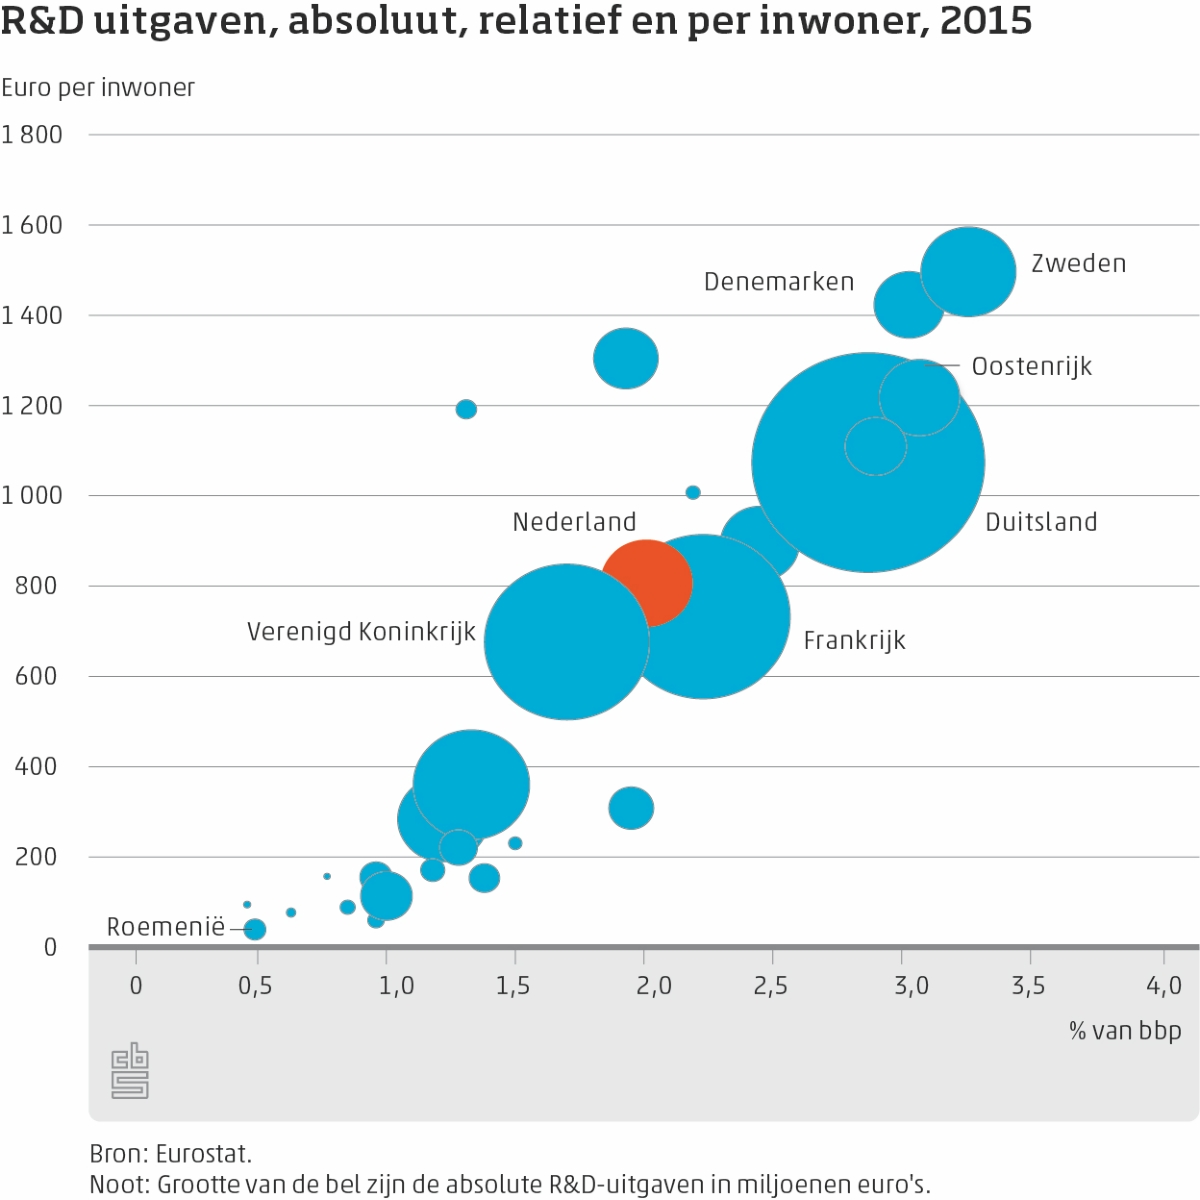 R&D uitgaven per inwoner landen europa